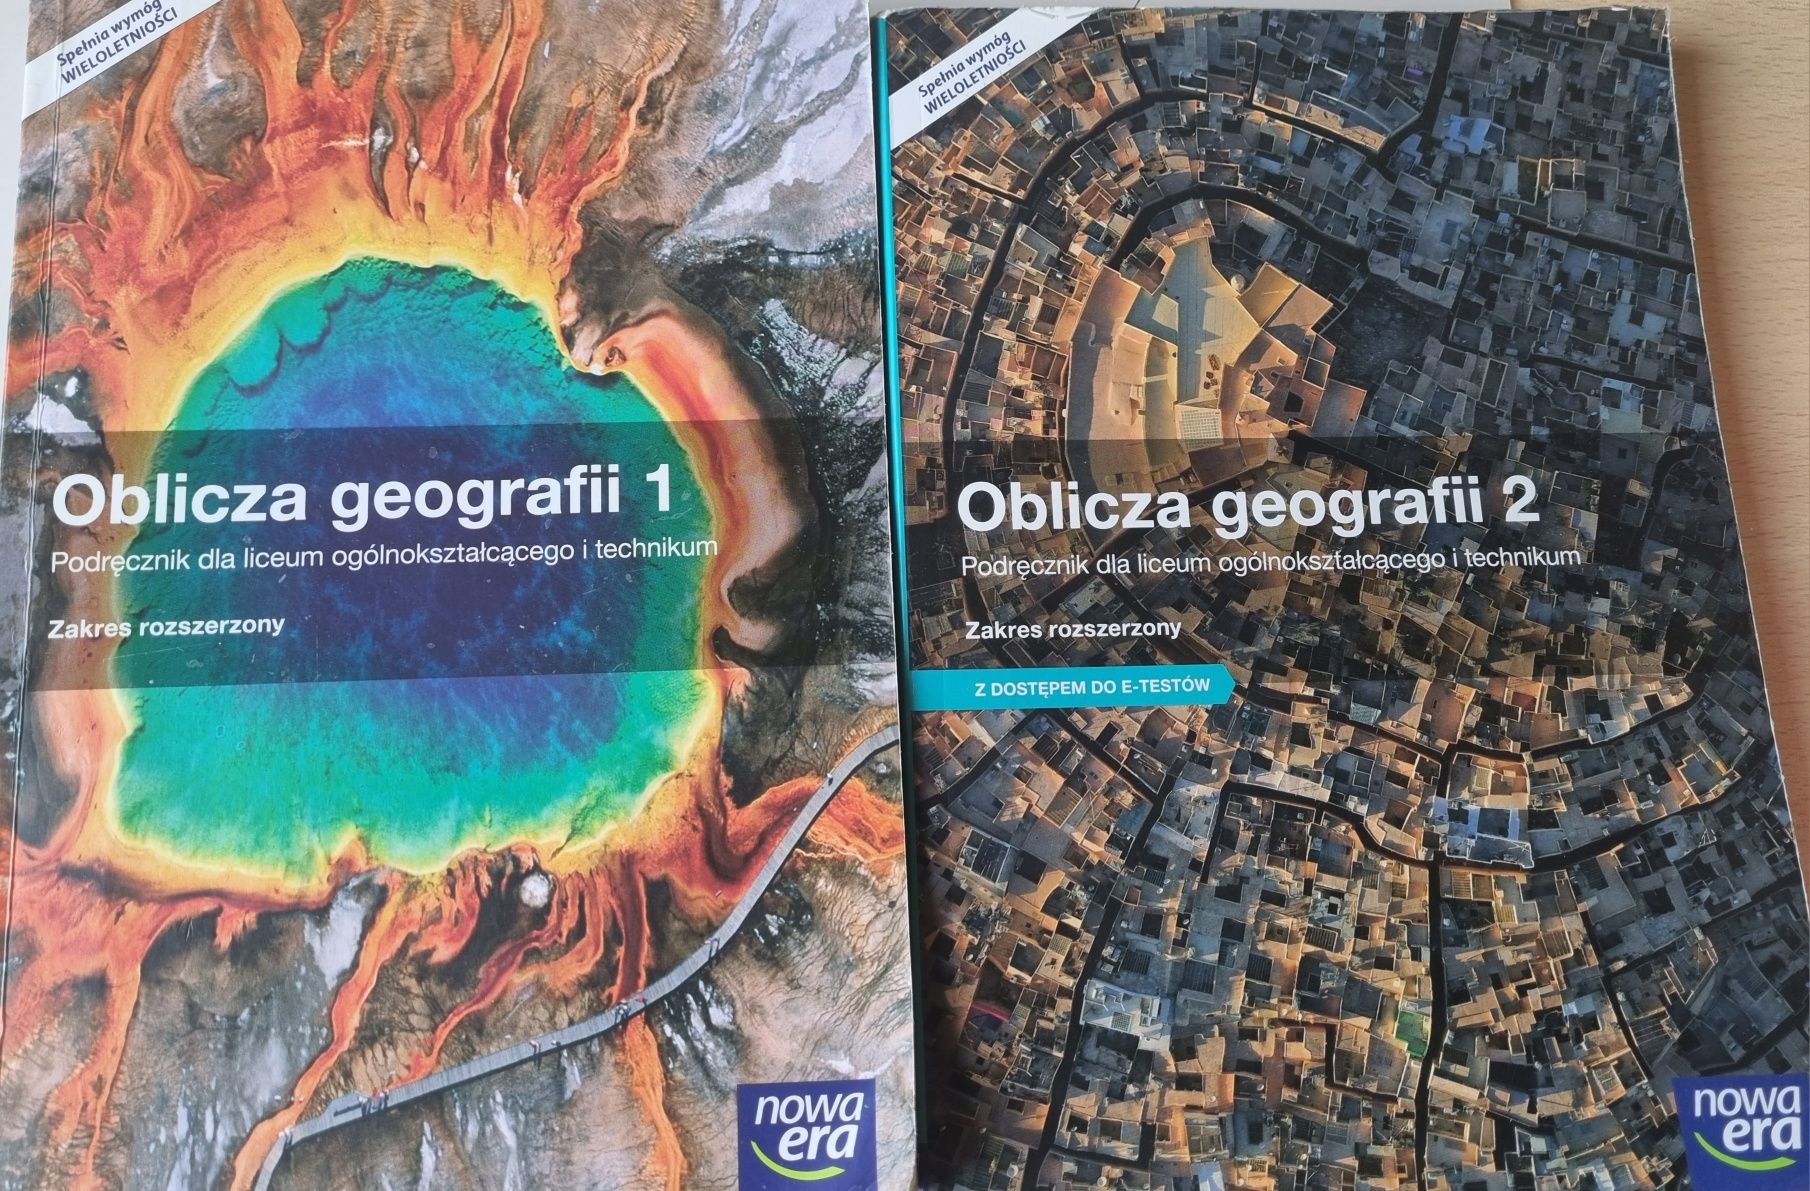 Podręczniki Oblicza geografii 1 i 2